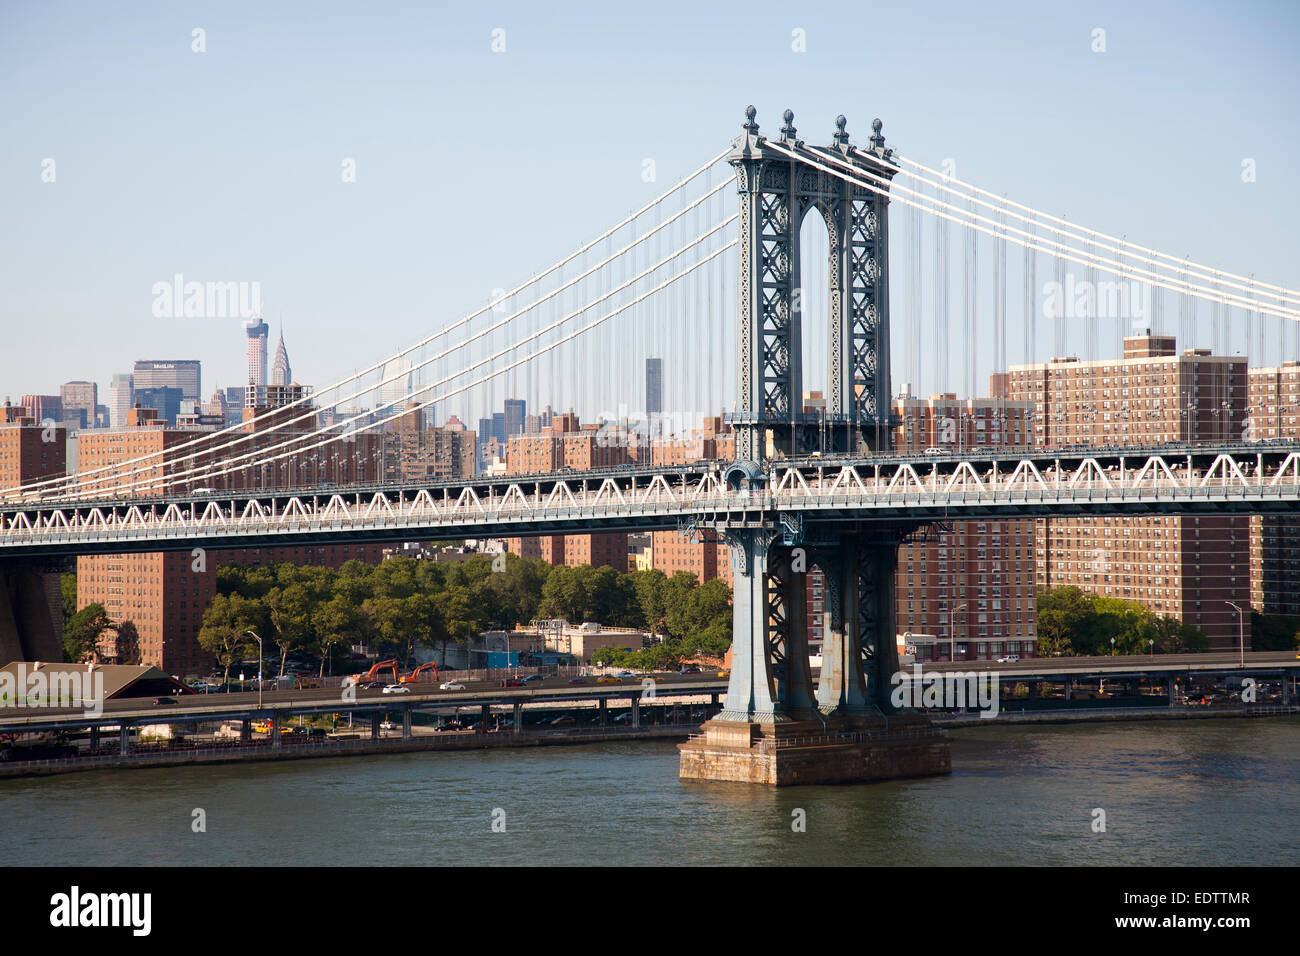 Manhattan Manhattan Bridge et sur l'arrière-plan, l'East River, New York, USA, Amérique Latine Banque D'Images